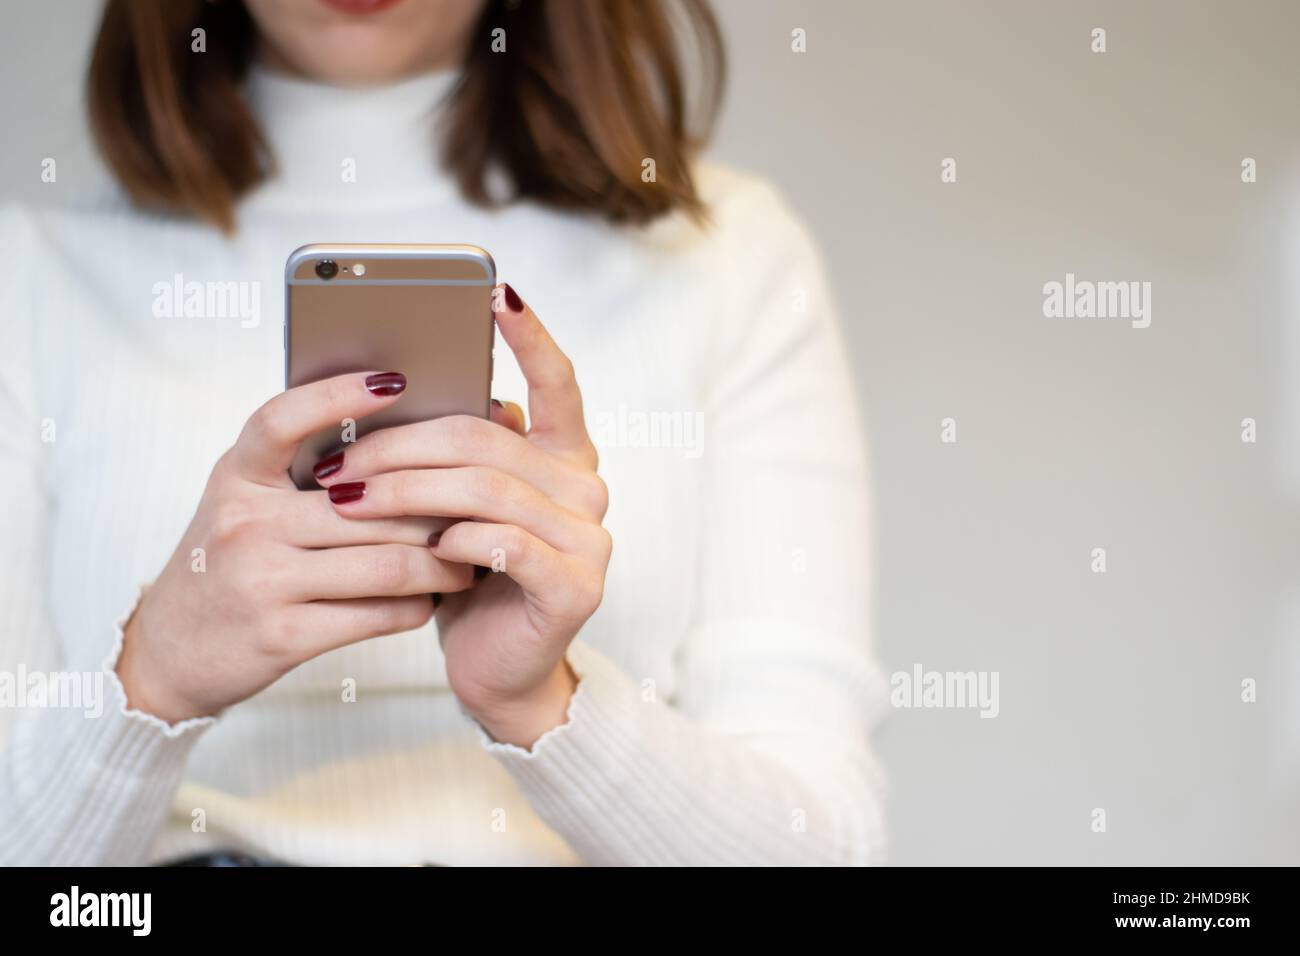 Immagine smartphone di un telefono cellulare con una mano da donna Foto Stock